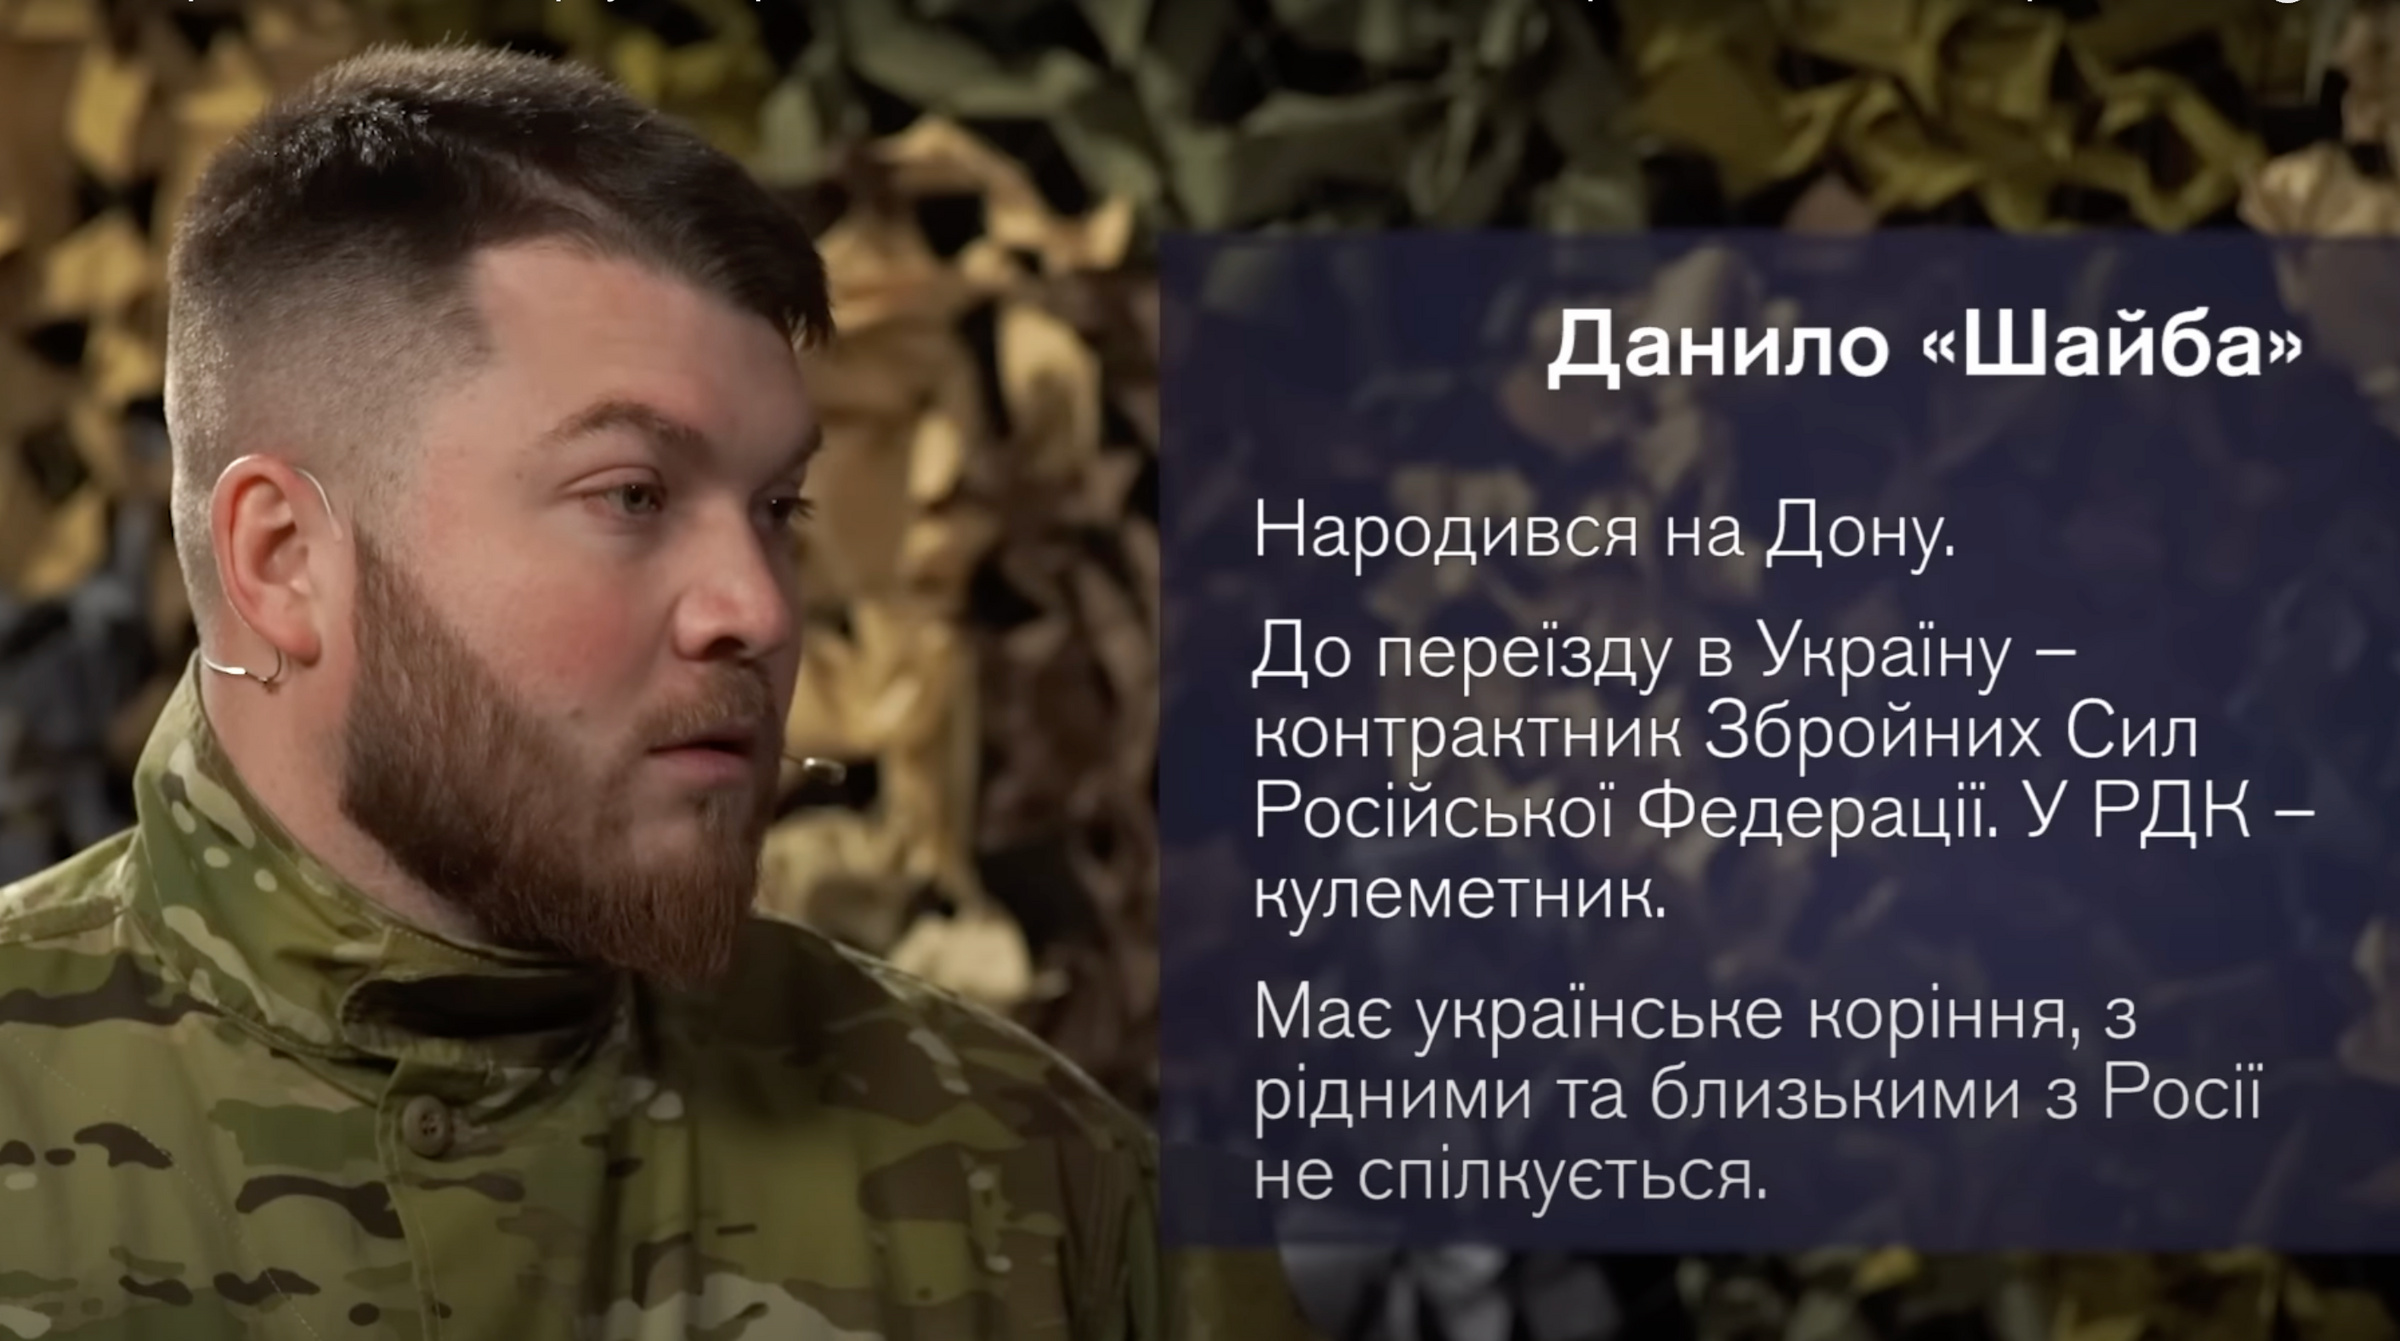 Украинские пропагандисты сняли фильм о "хороших русских", воюющих в РДК против своей родины. Фото © Соцсети